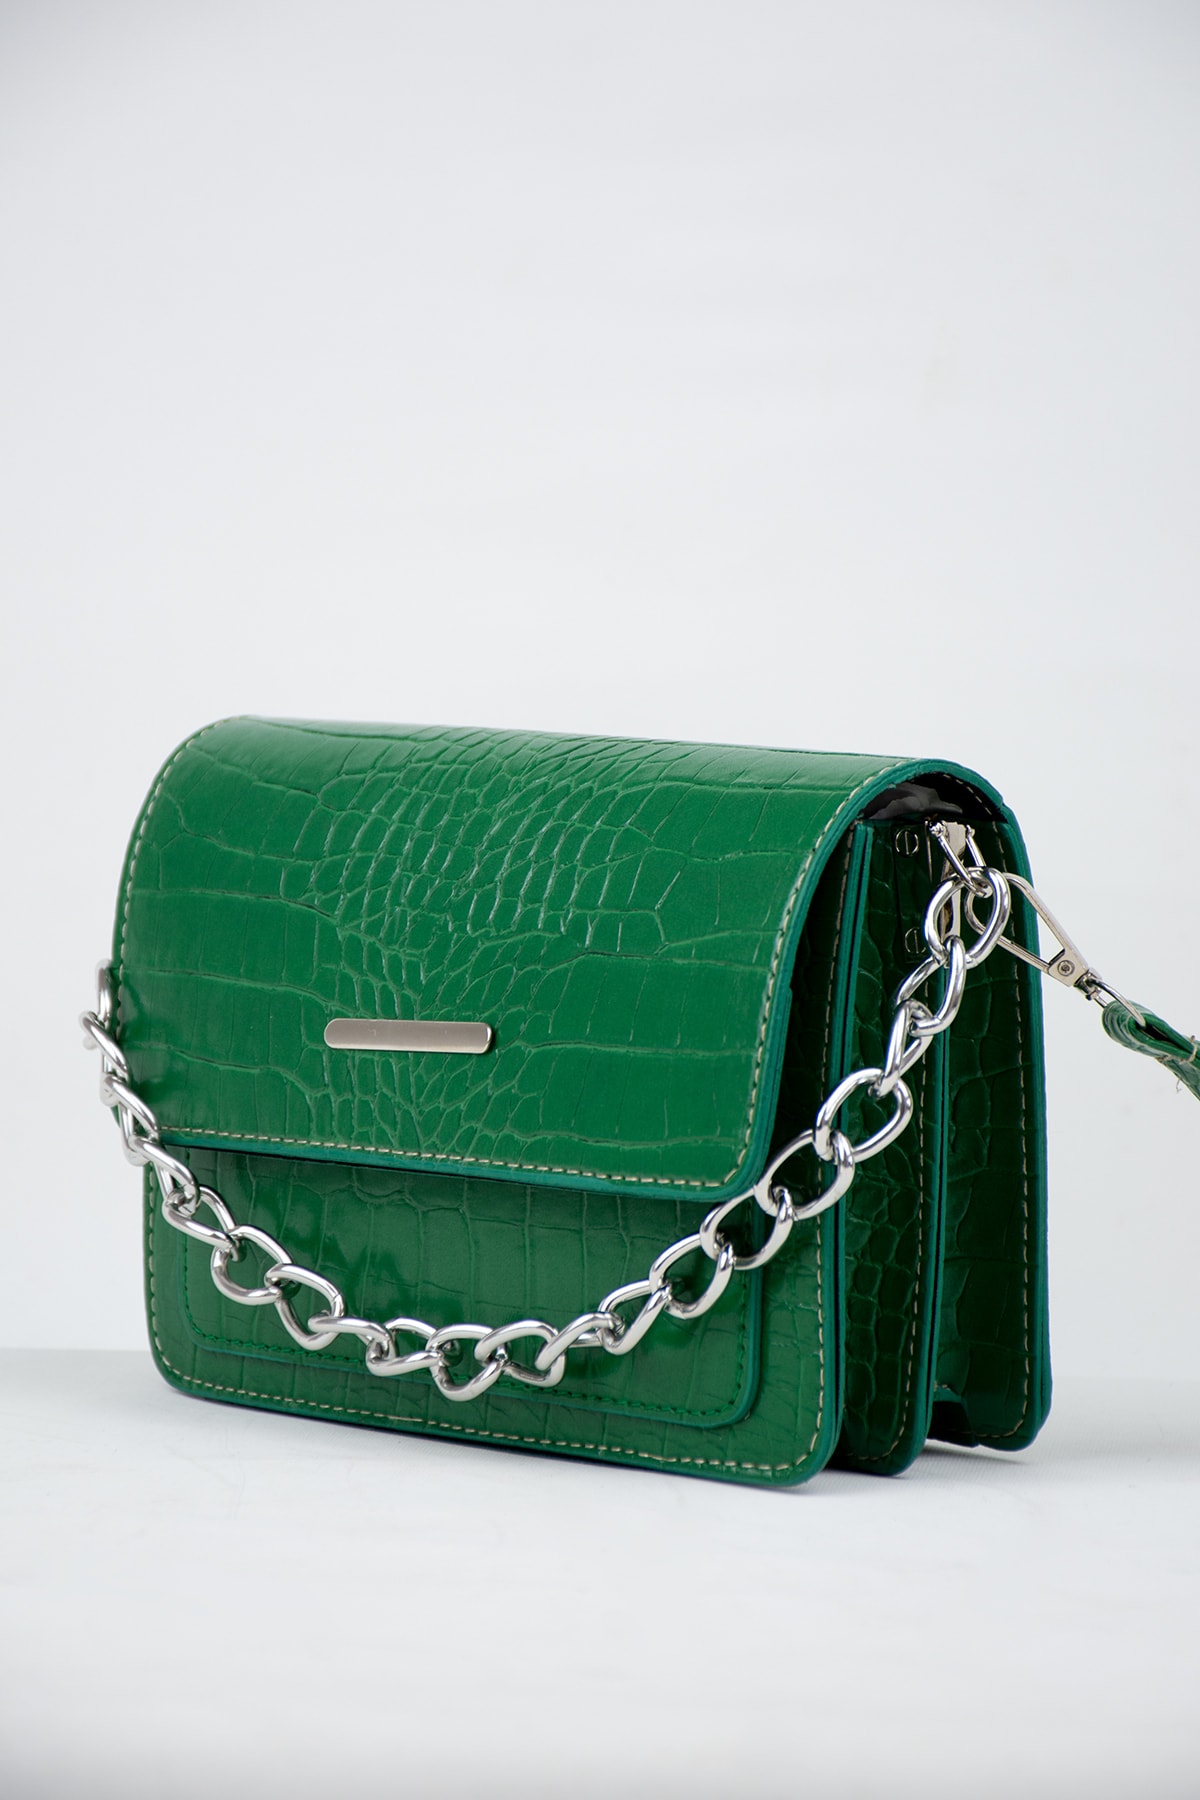 MEİZEN Yeşil Kadın Timsah Desenli Clutch Baget Zincir Askılı Çanta